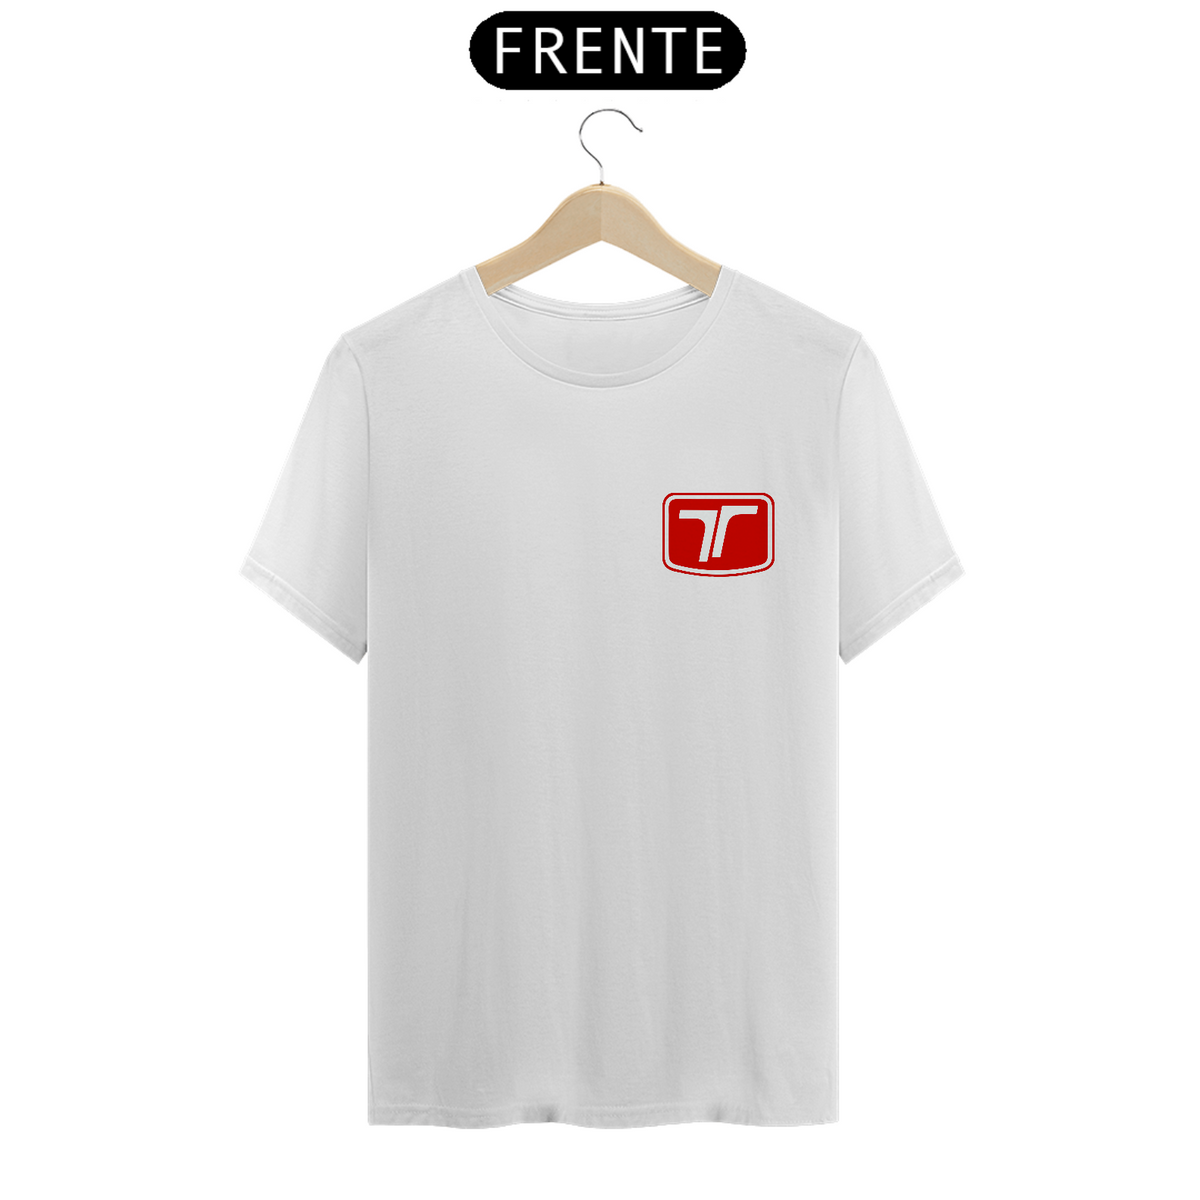 Nome do produto: T-Shirt Quality - Troller Logo Red